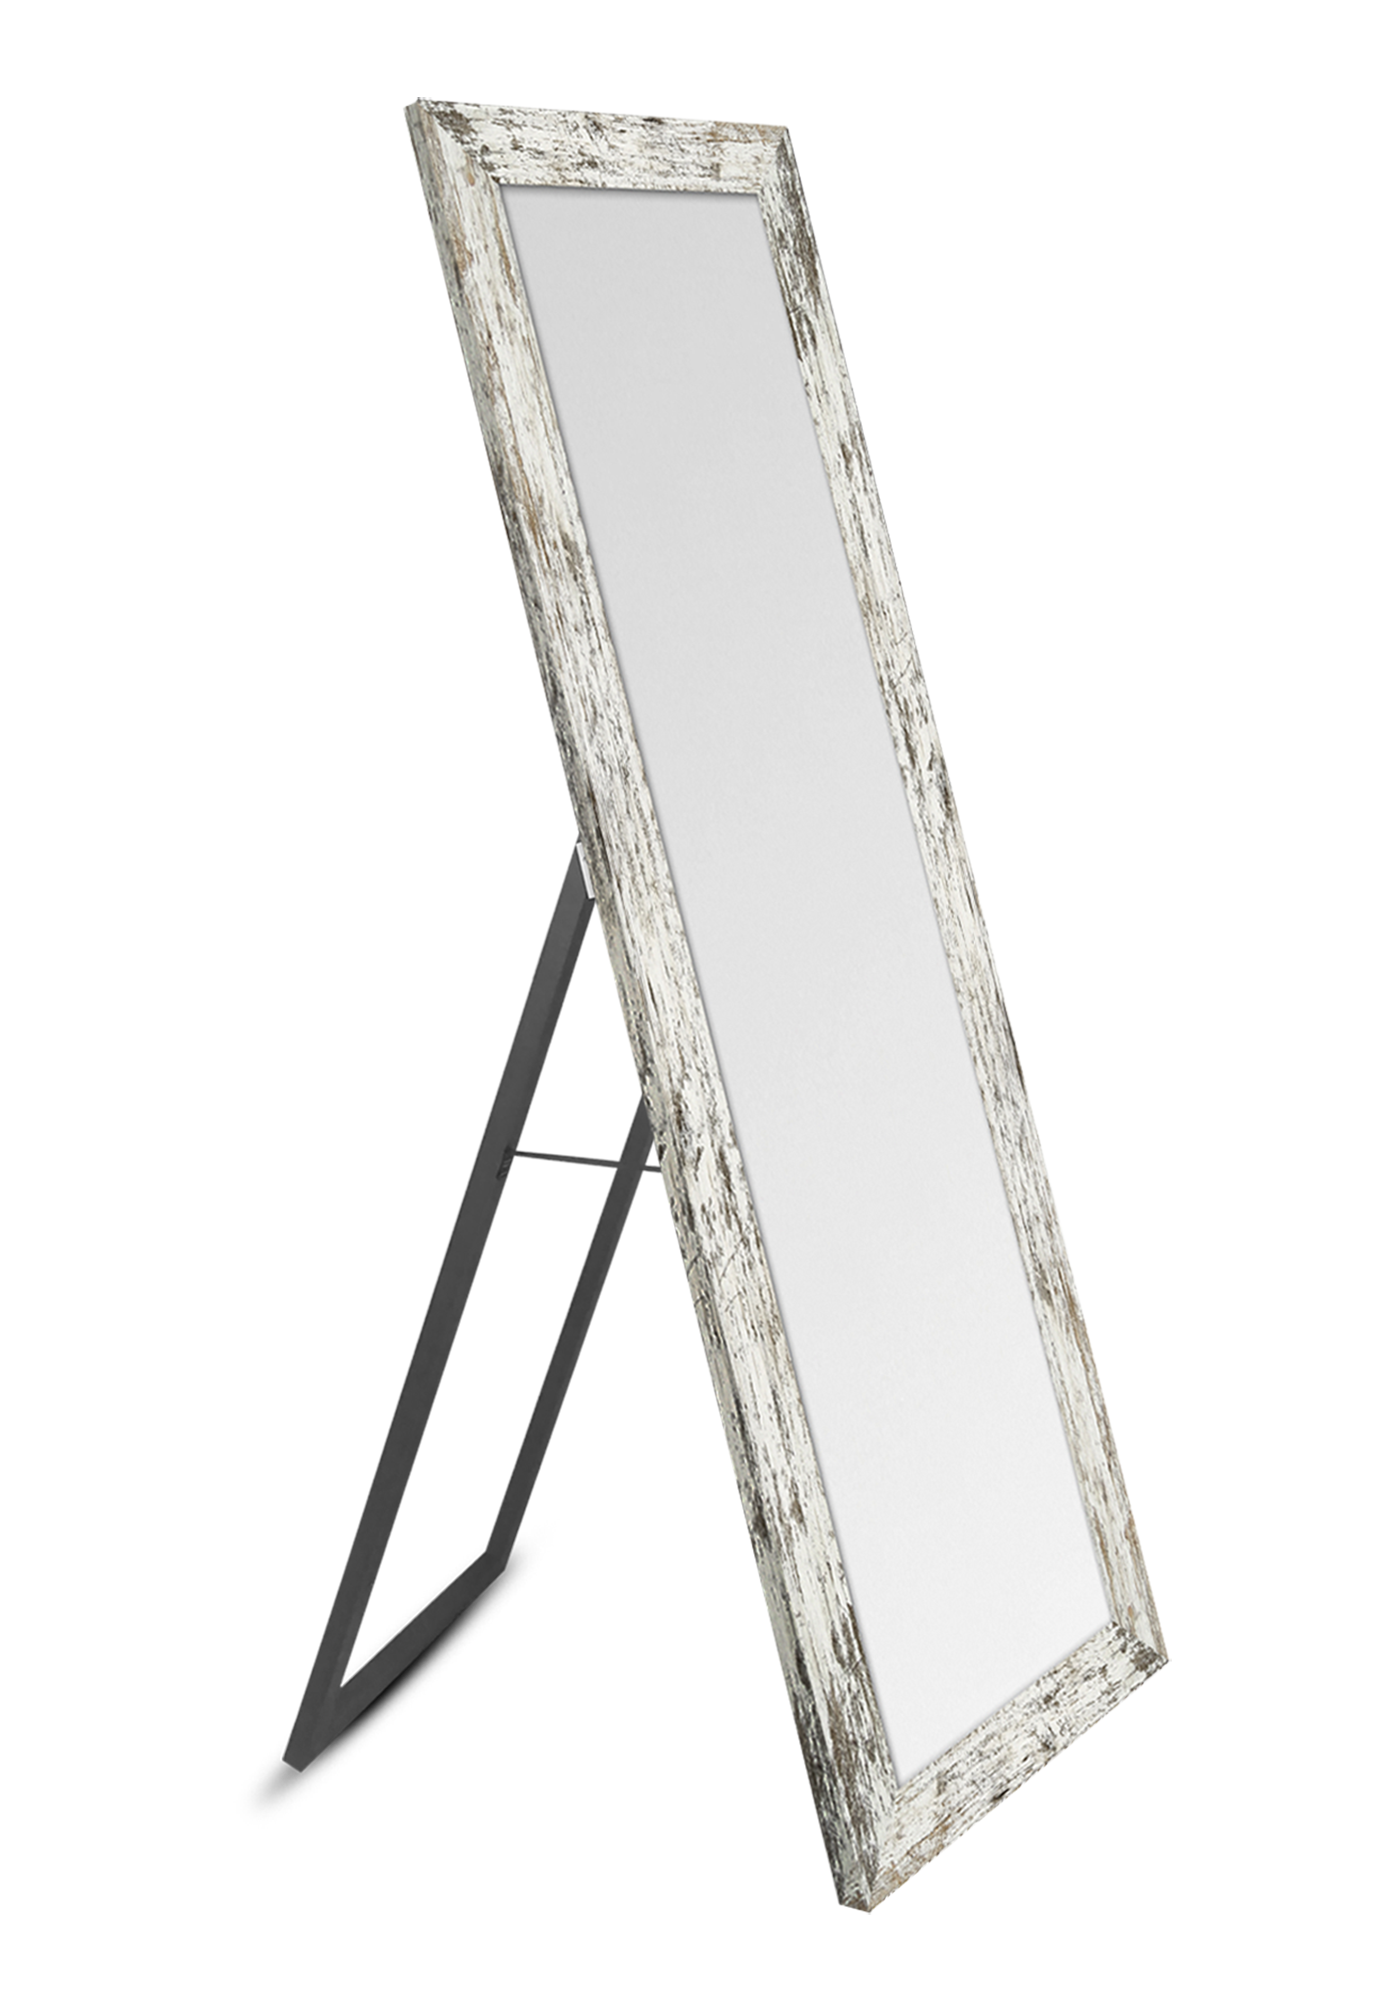 Espejo enmarcado de pie rectangular harry beige 155 x 52 cm